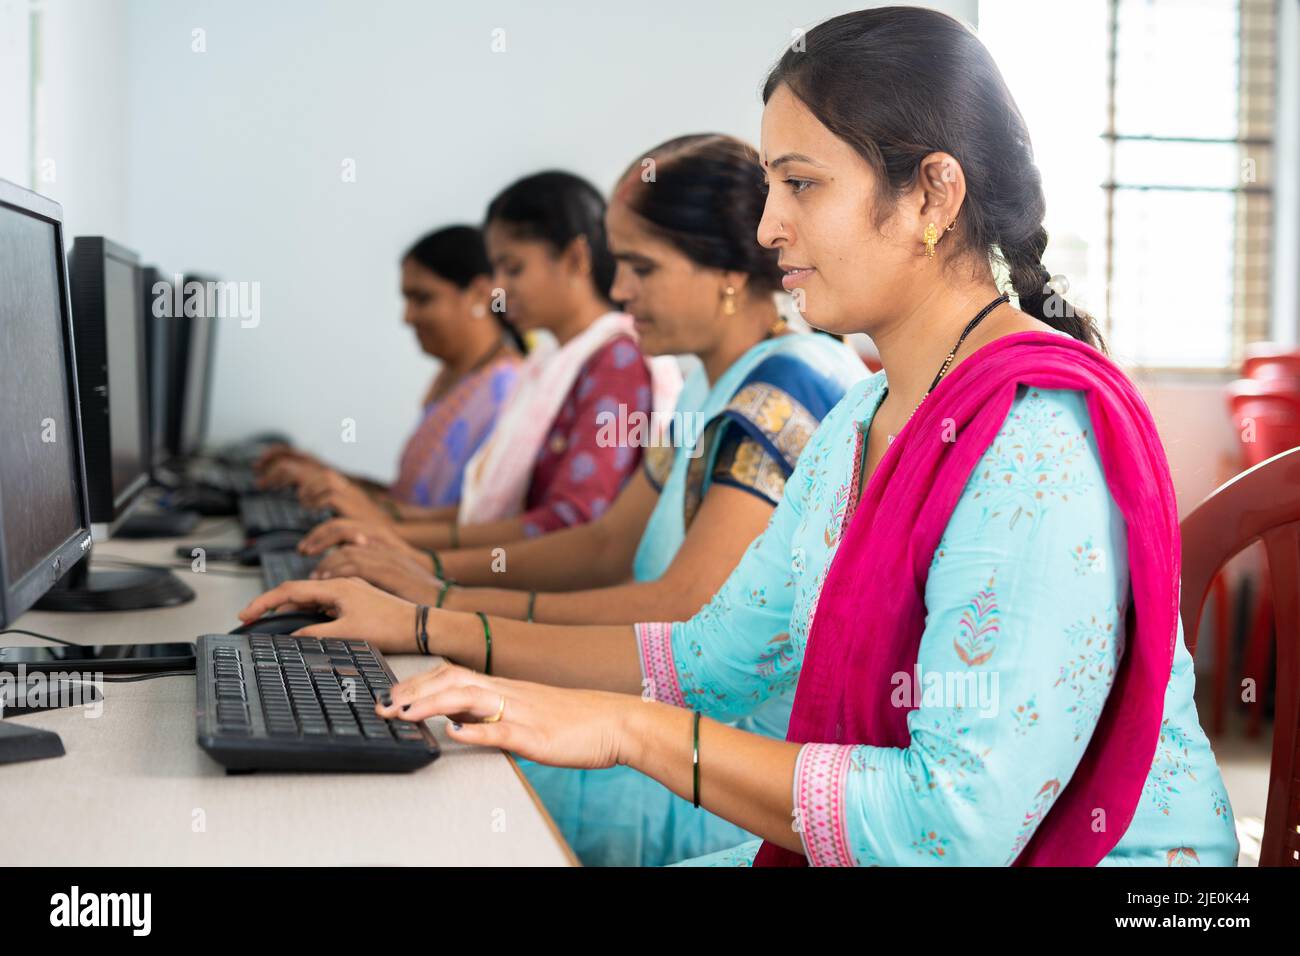 Gruppe von Frauen beschäftigt Lernen oder arbeiten am Computer im Ausbildungszentrum - Konzept der Ermächtigung, Lernen und Bildung Stockfoto